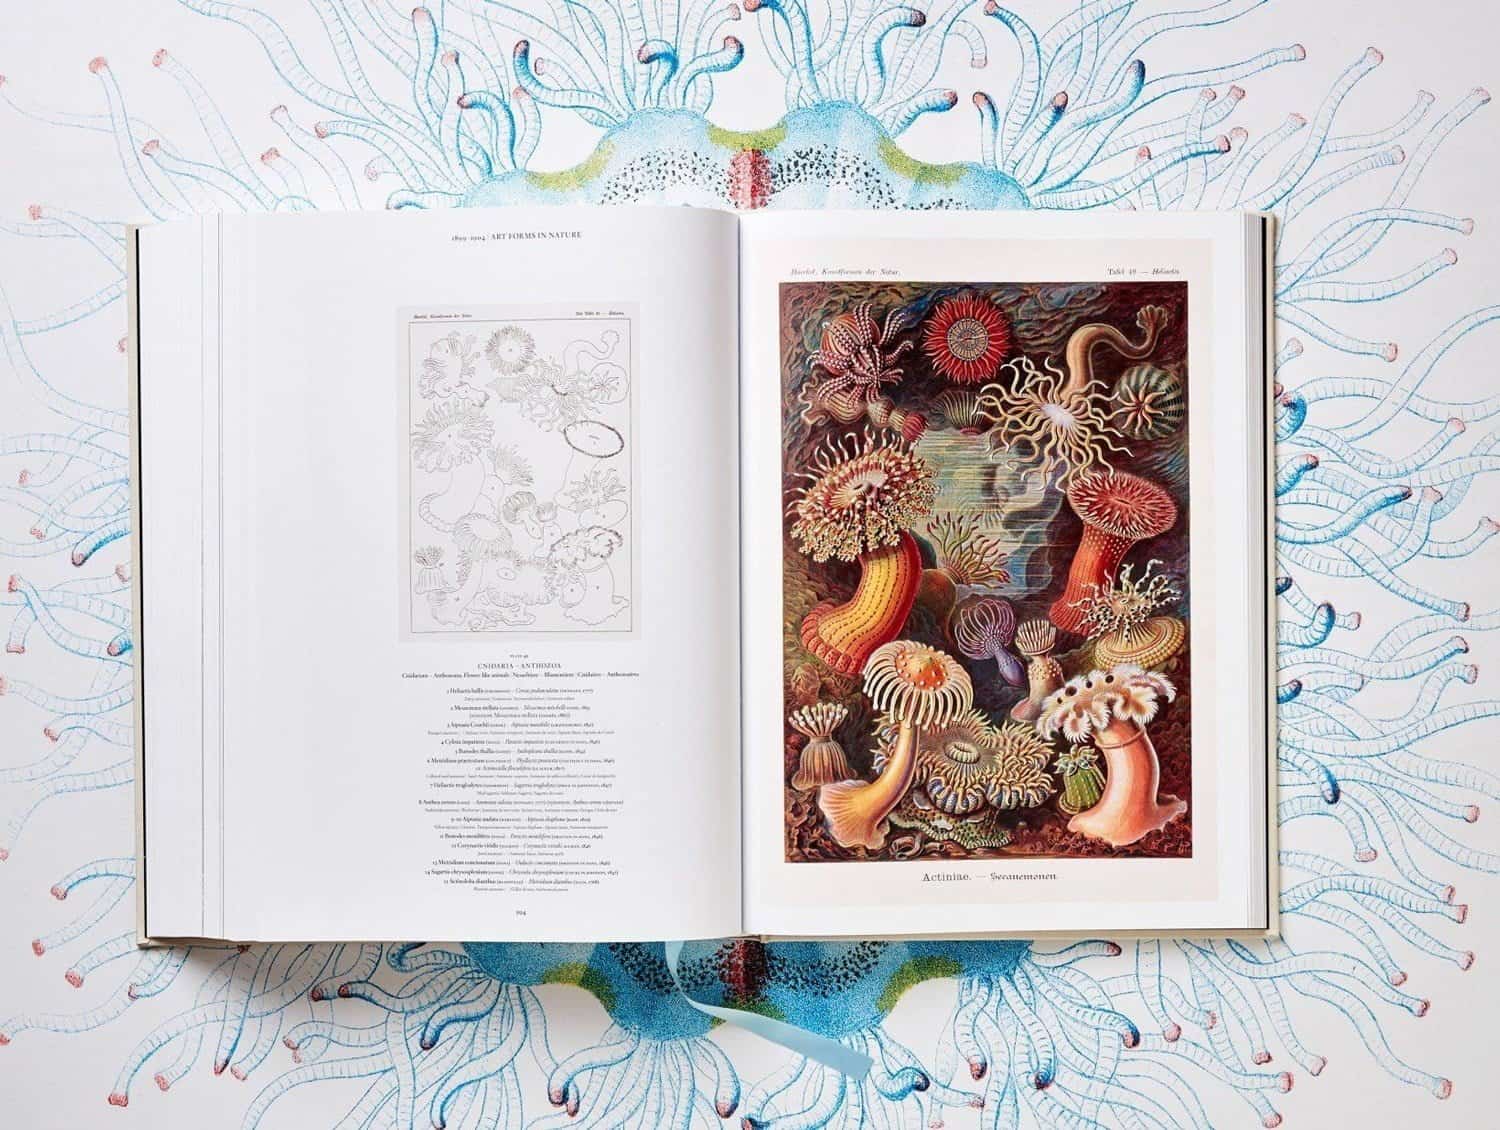 Boek met illustraties van Ernst Haeckel